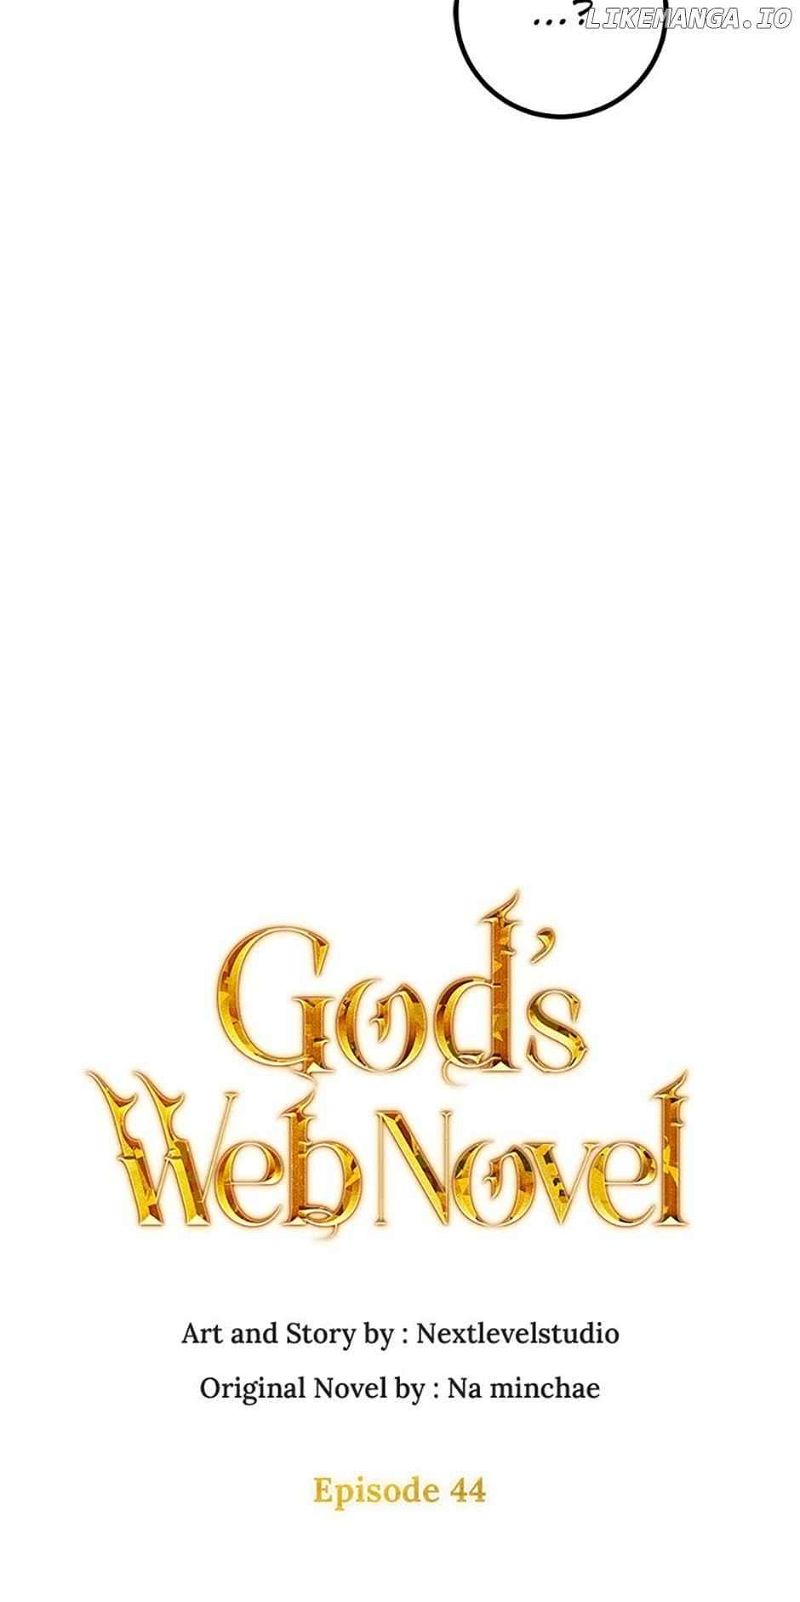 God's Webnovel Chapter 44 page 23